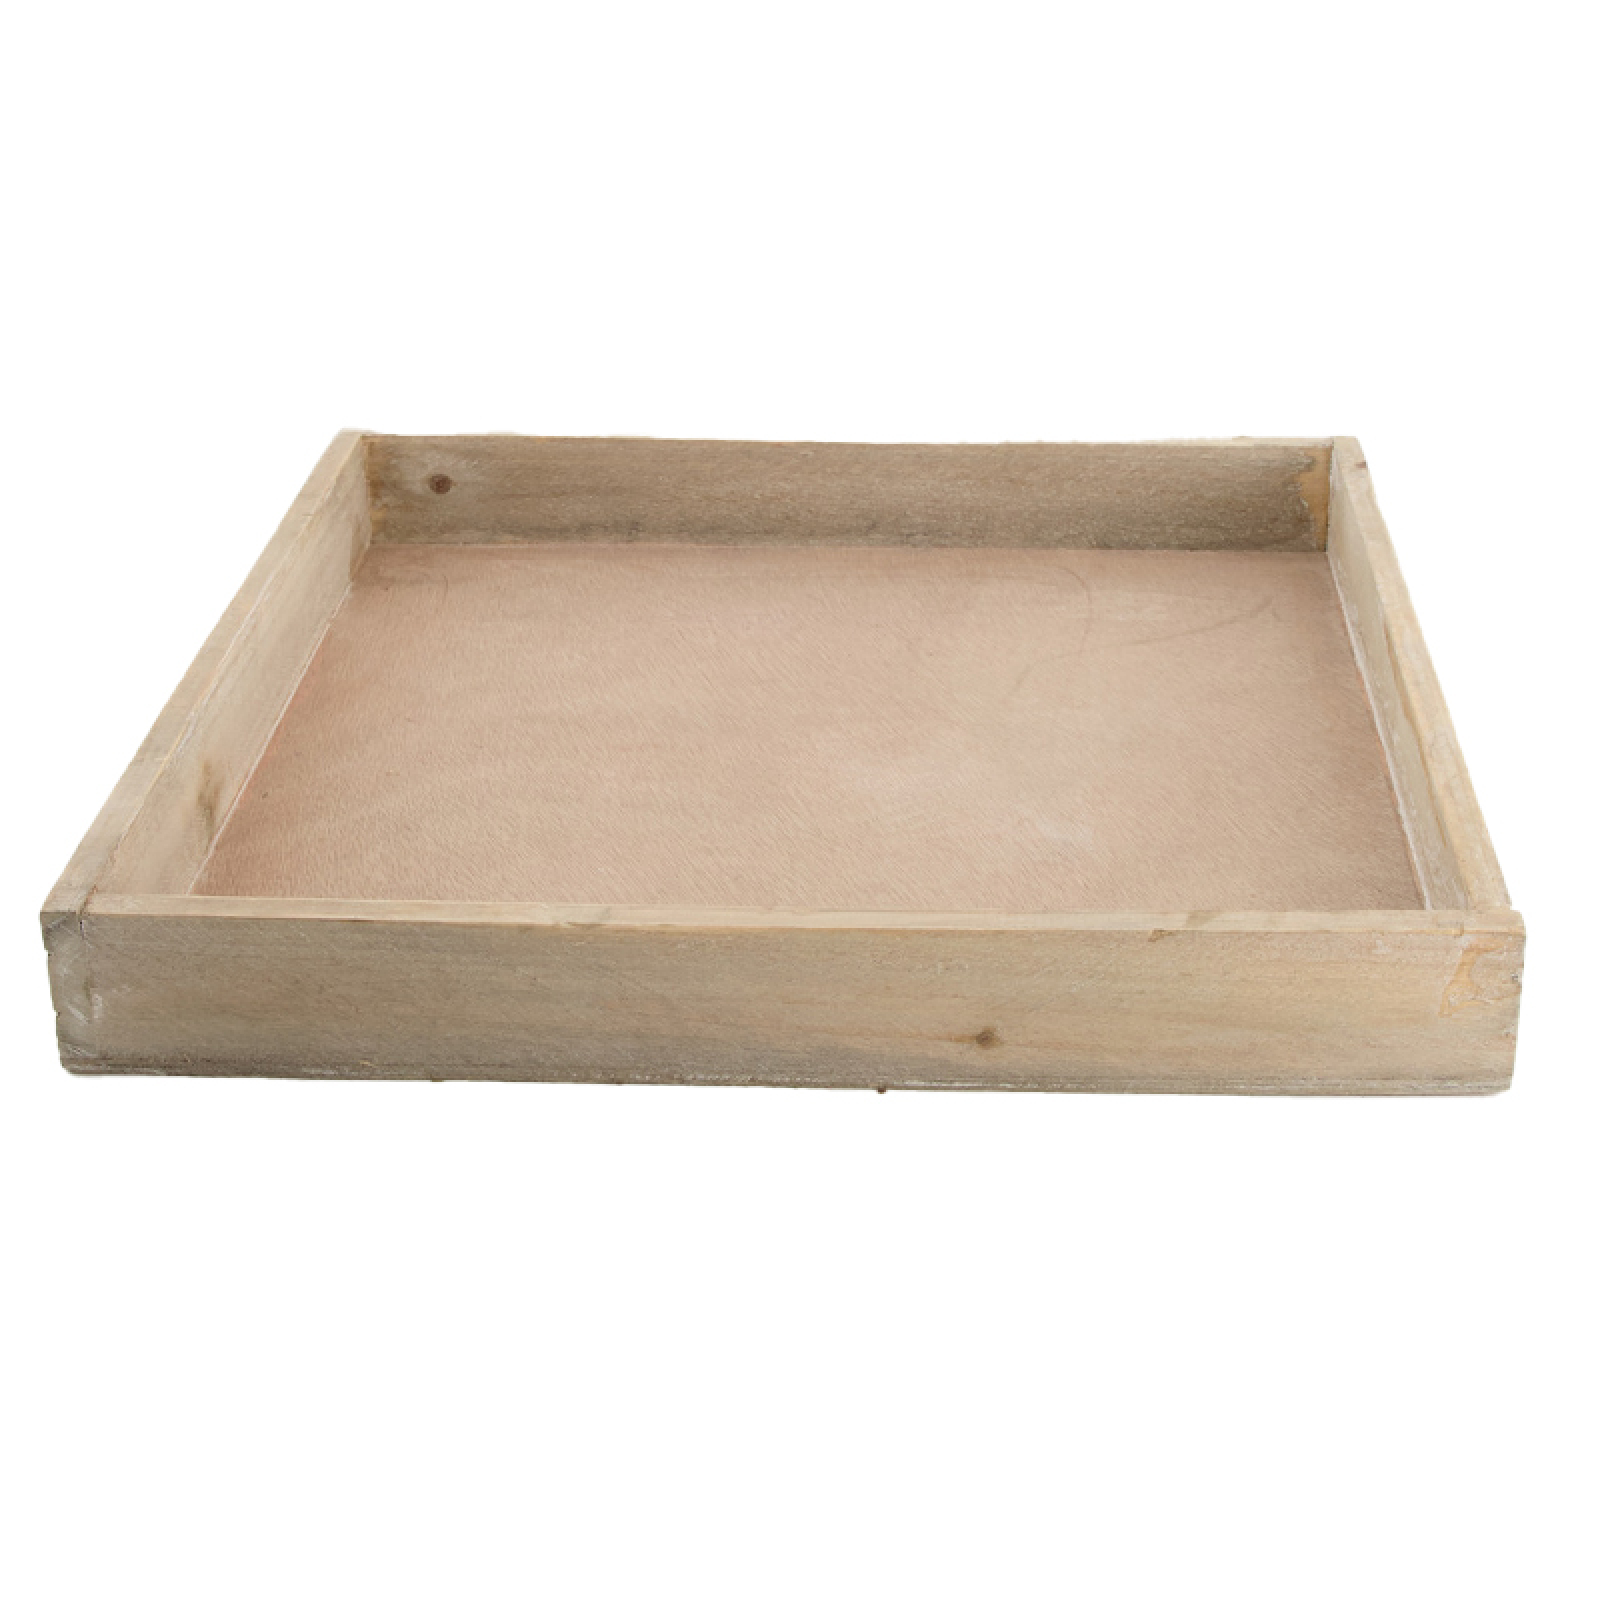 Holz-Tablett 30x30x4cm natur gewaschen 95275-298